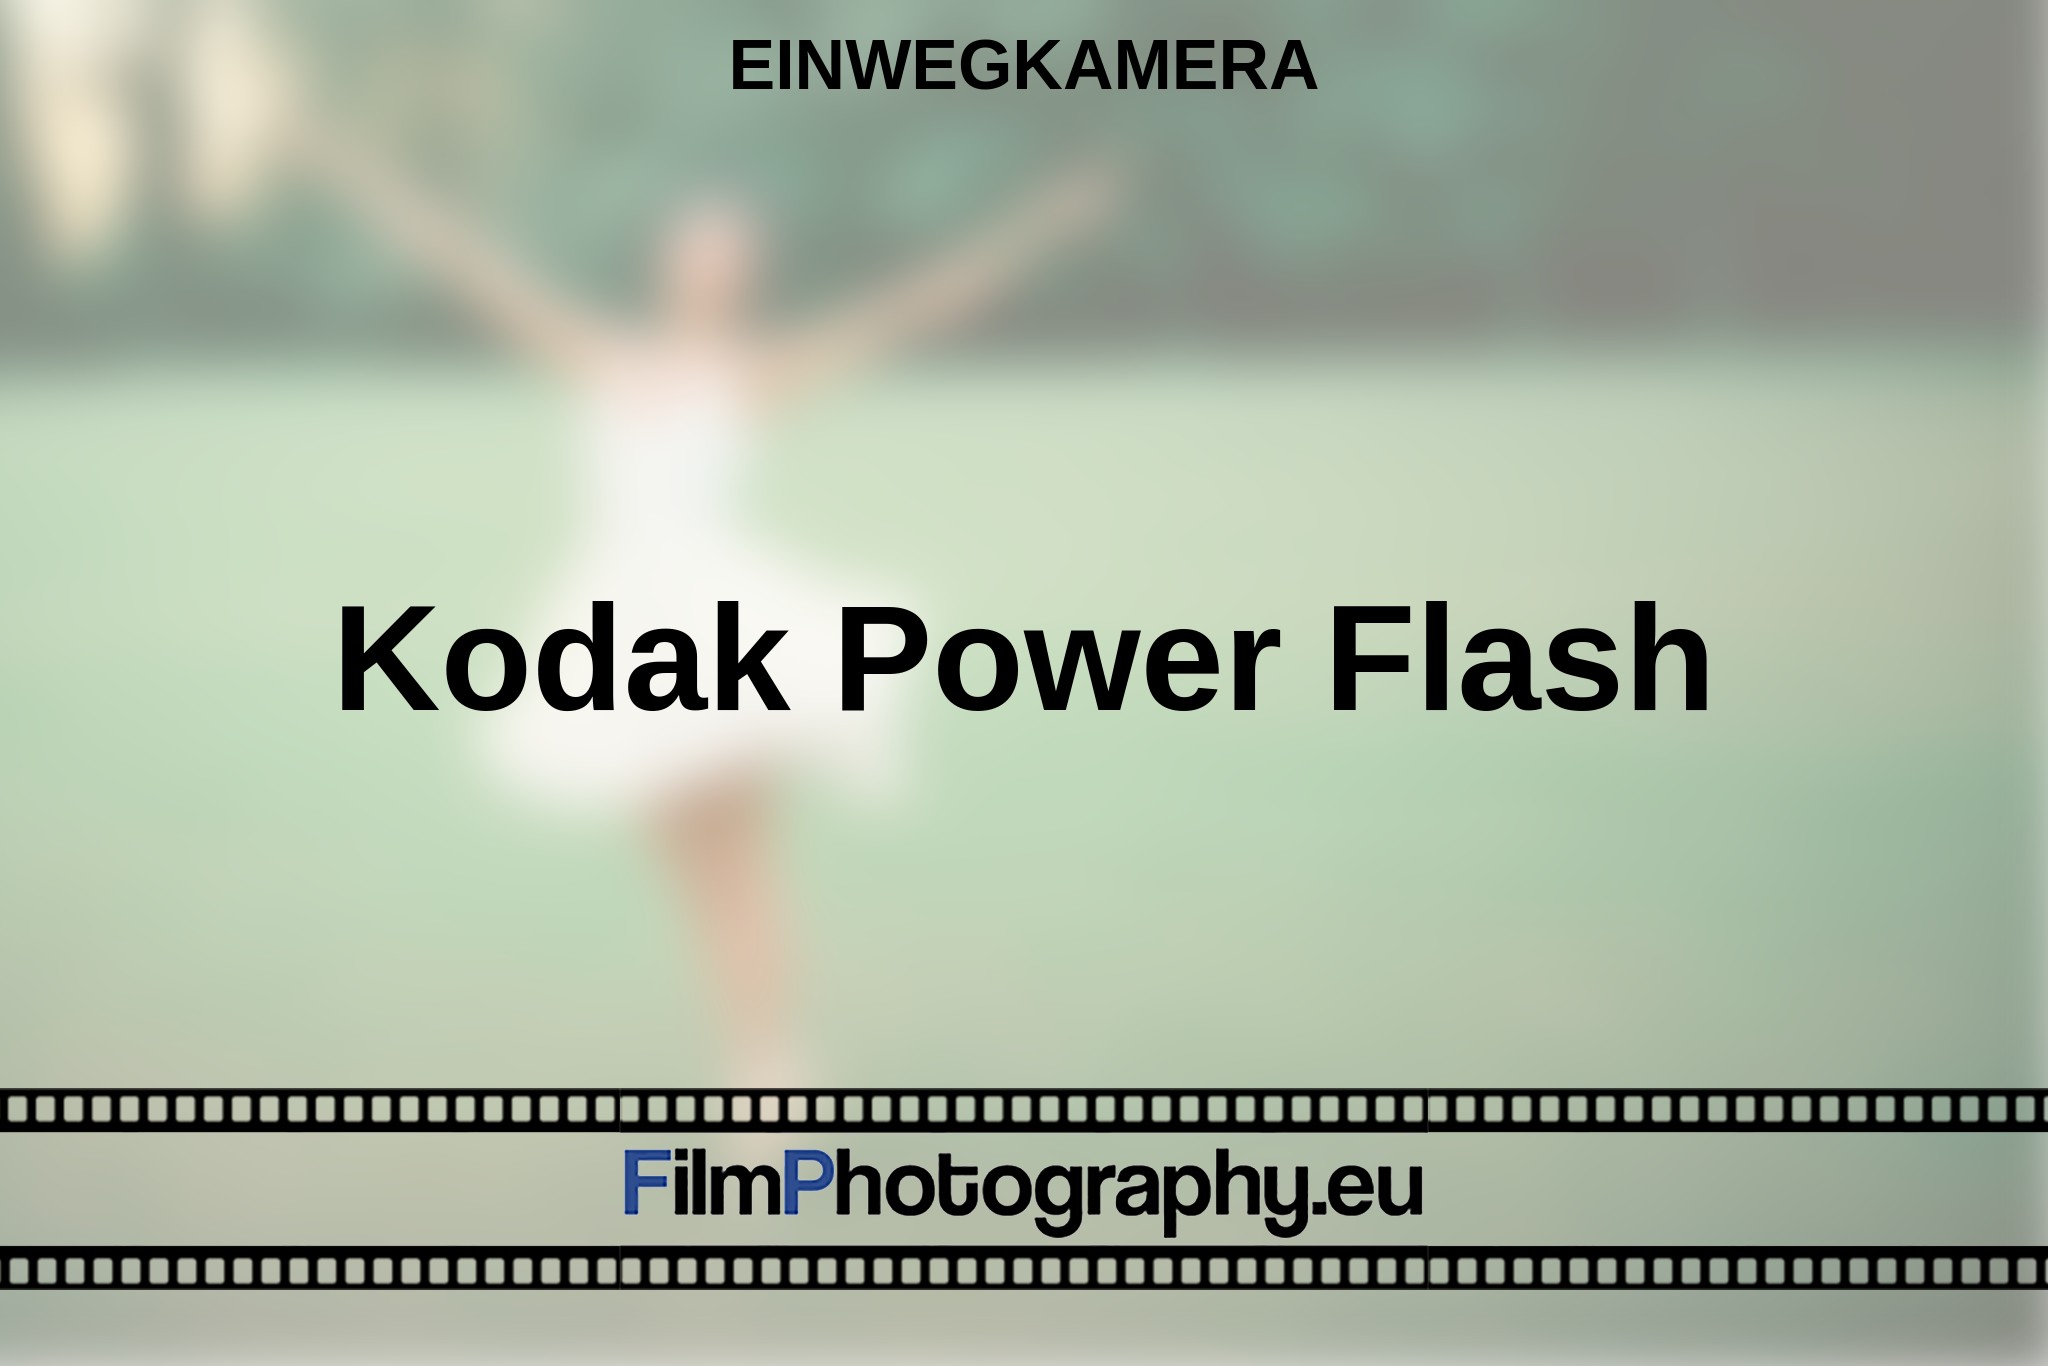 kodak-power-flash-einwegkamera-bnv.jpg